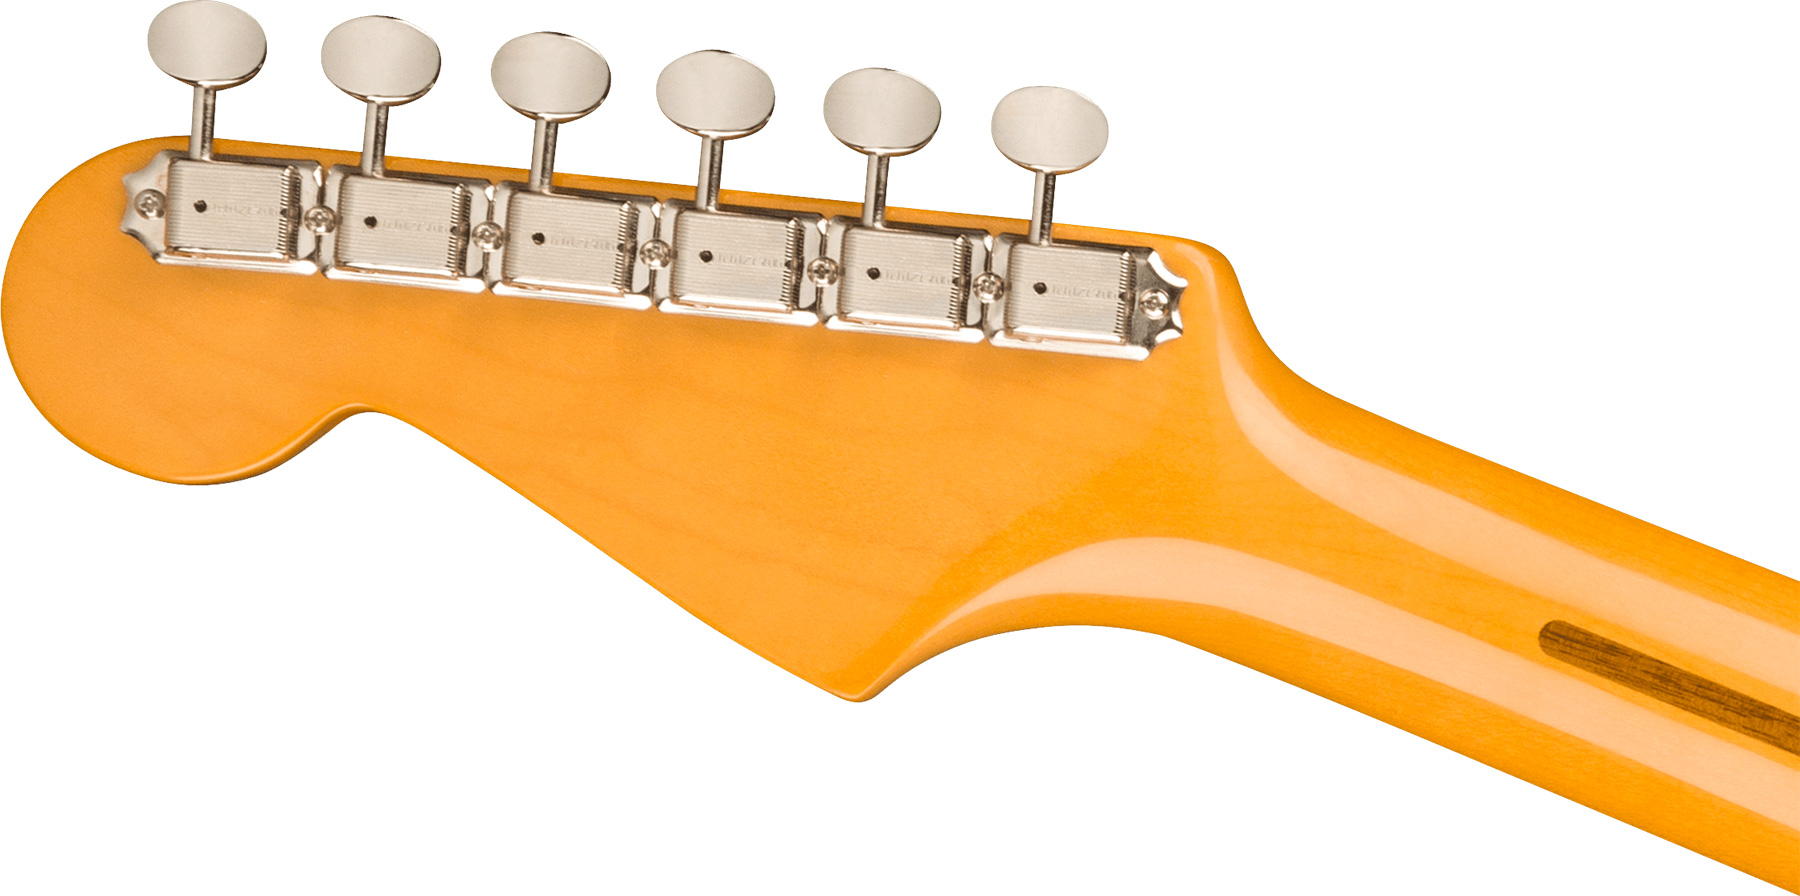 Fender Strat 1957 American Vintage Ii Usa 3s Trem Mn - Vintage Blonde - Guitarra eléctrica con forma de str. - Variation 3